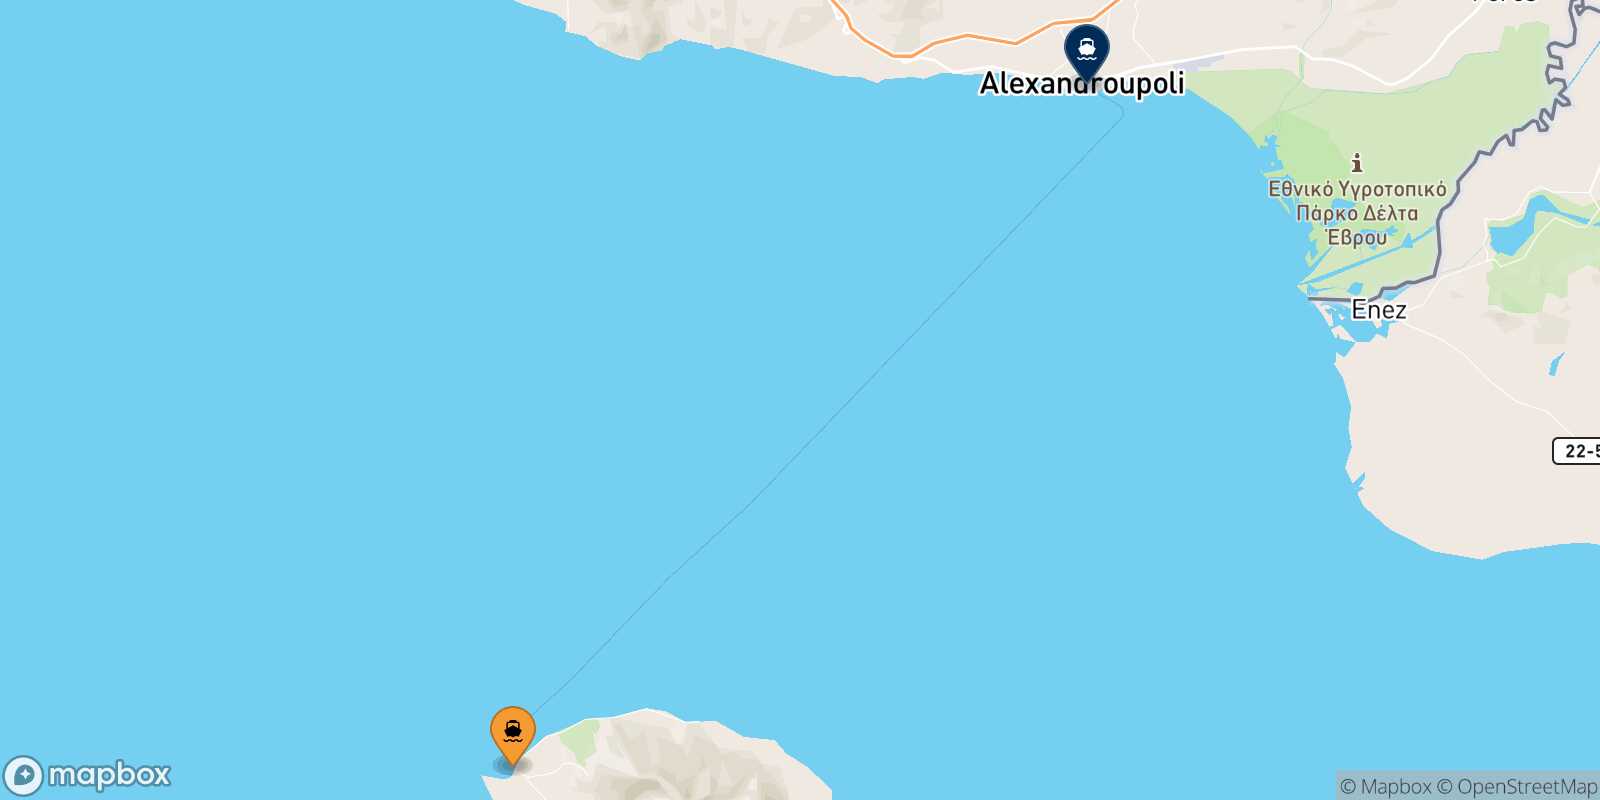 Mapa de la ruta Samothraki Alexandroupoli